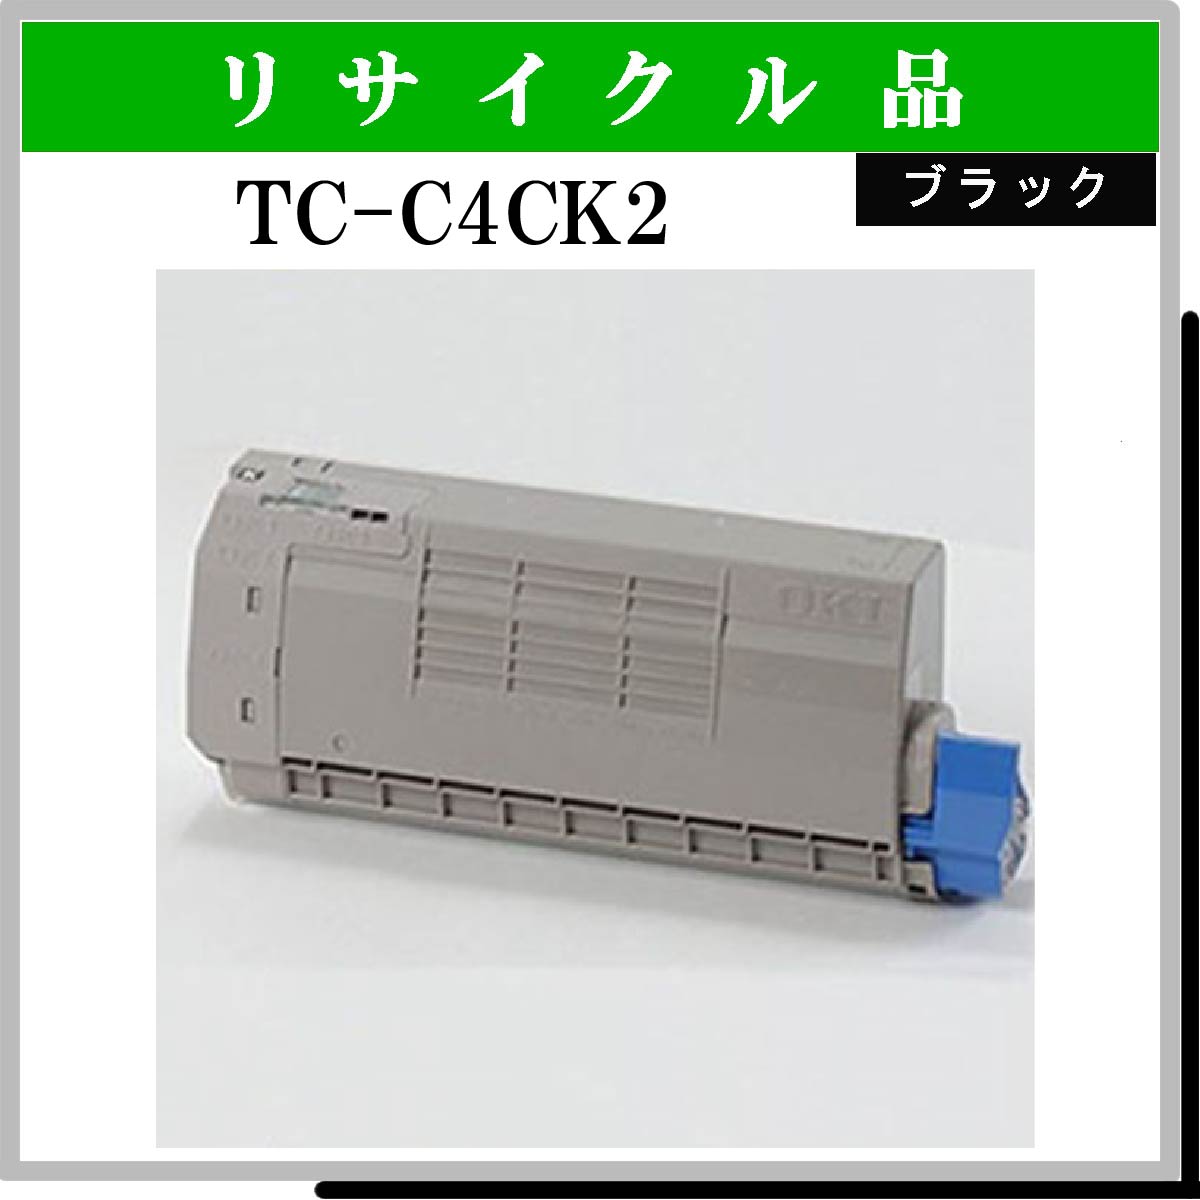 TC-C4CK2